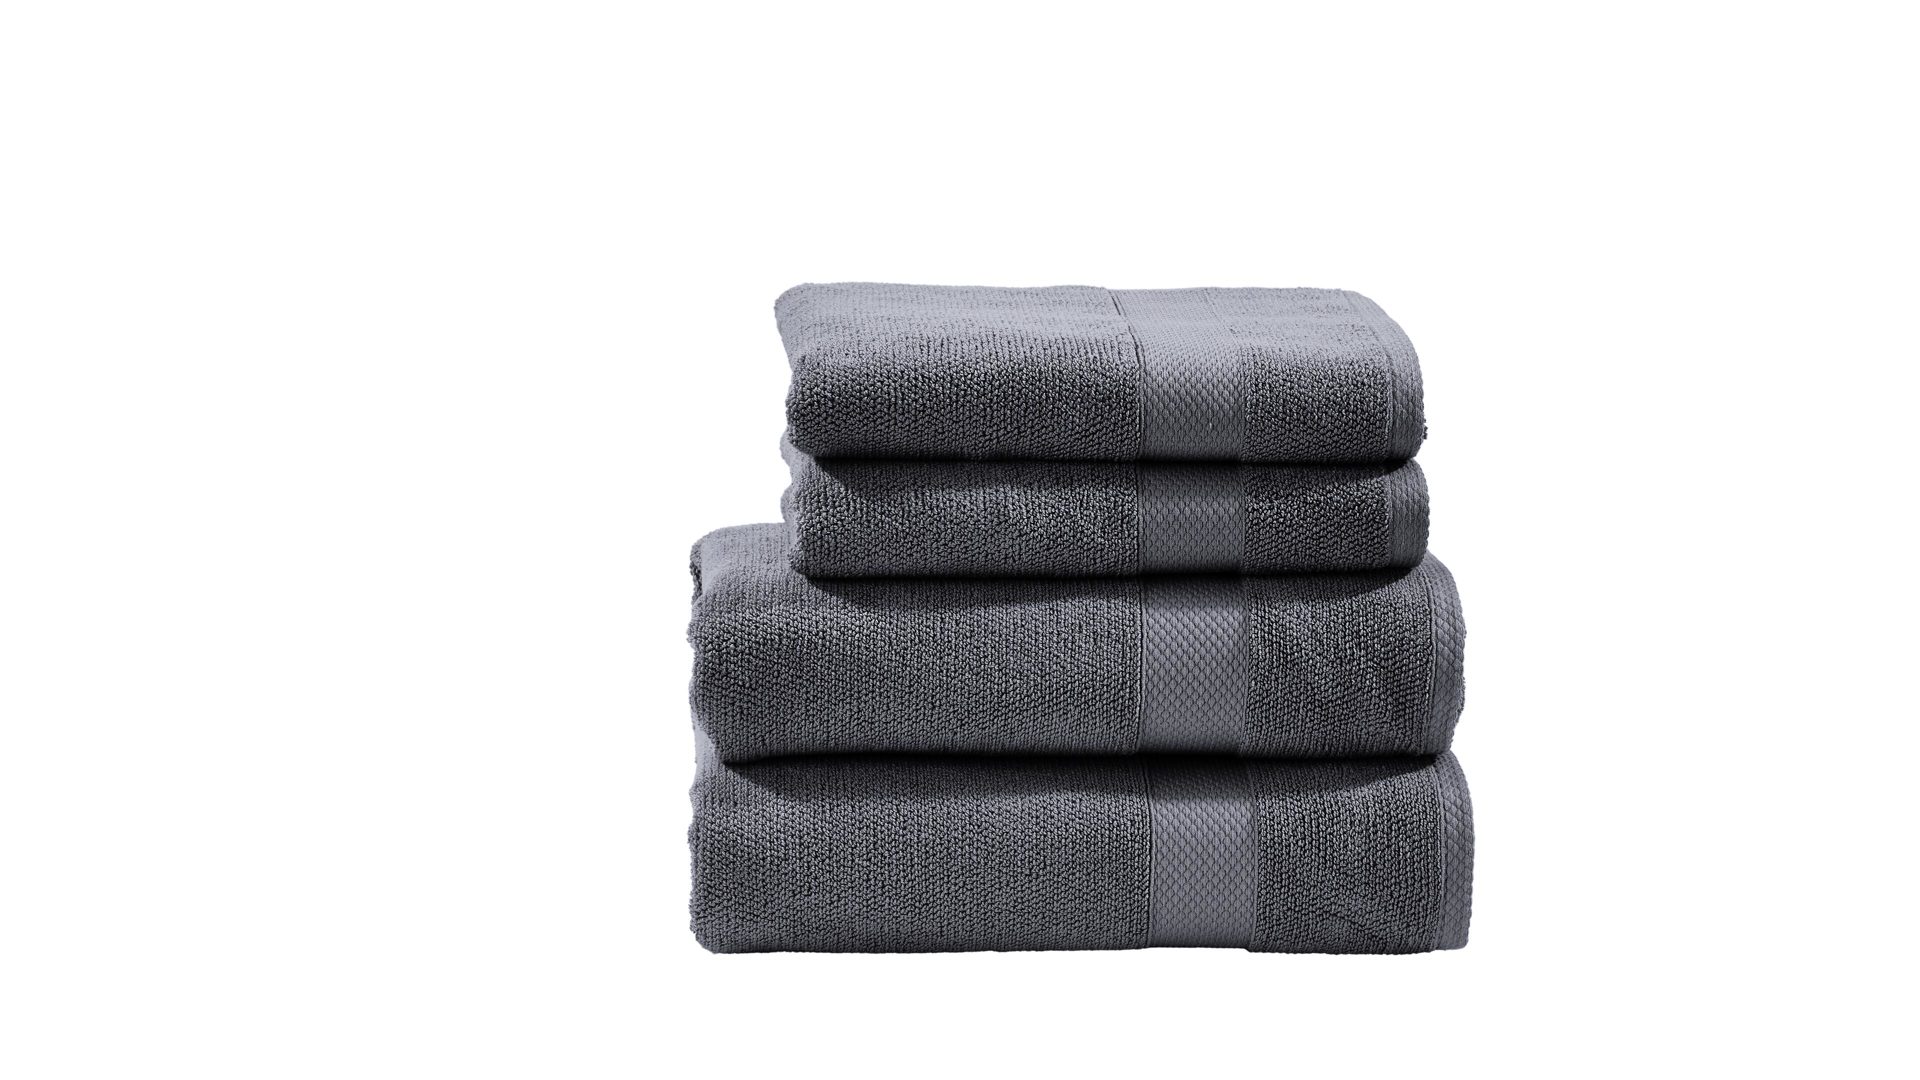 Handtuch-Set Done® by karabel home company aus Stoff in Anthrazit DONE® Handtuch-Set Deluxe anthrazitfarbene Baumwolle – vierteilig